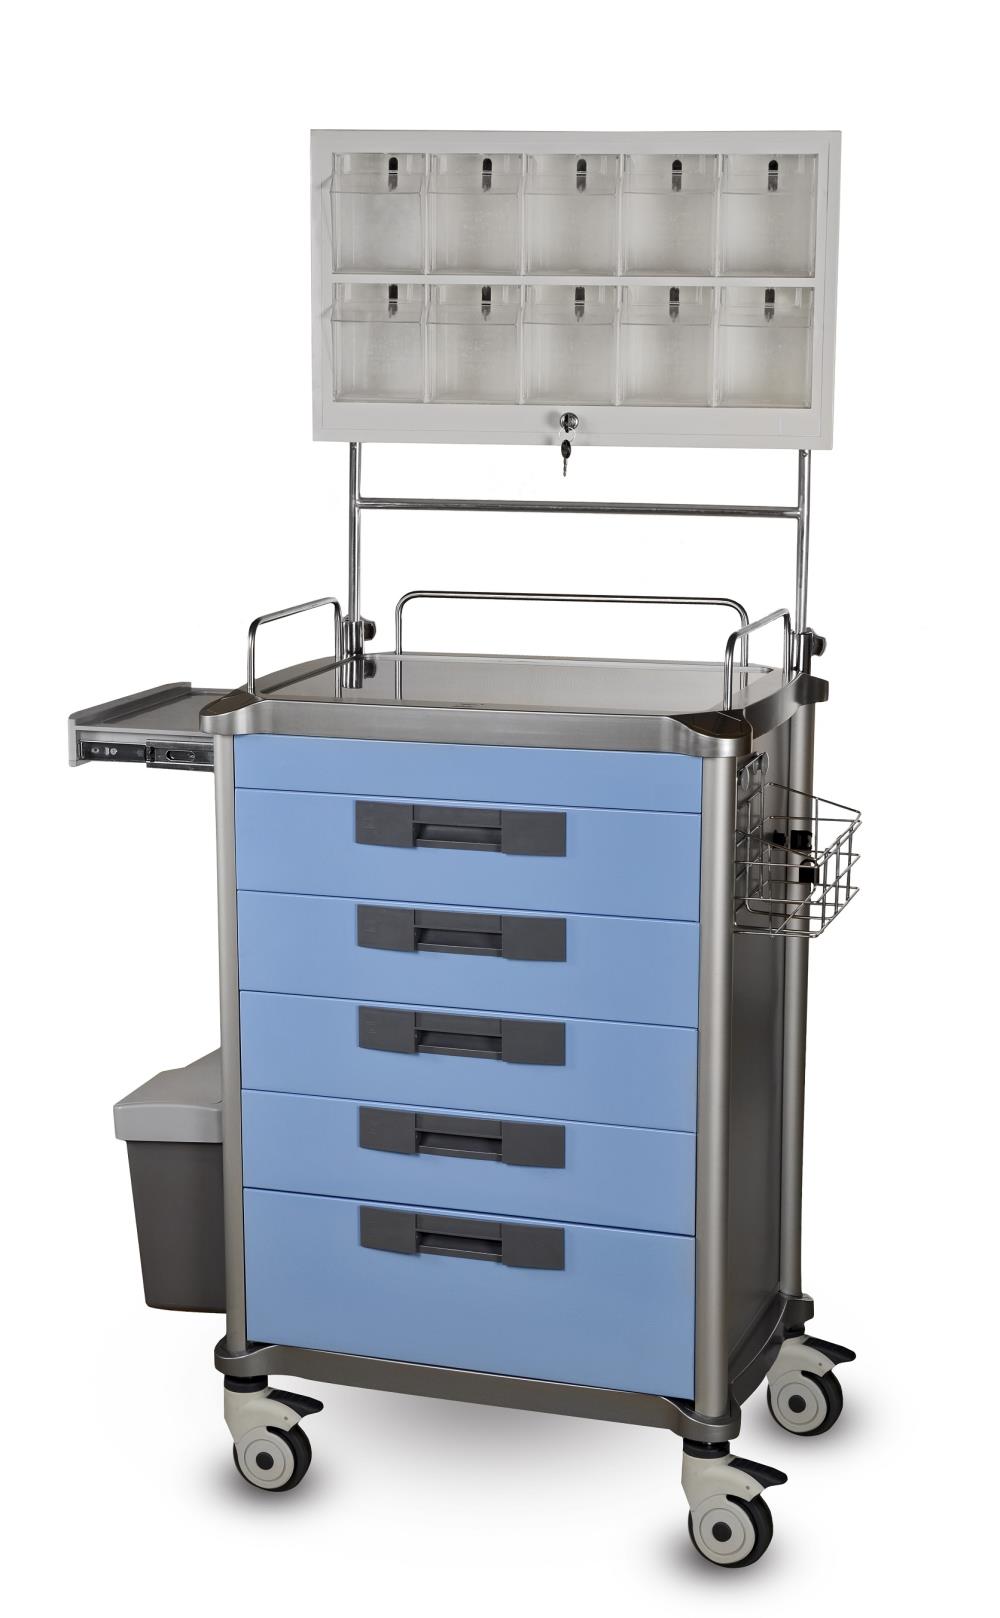 Wózek anestezjologiczny JDEMZ 234  (5 szufladowy) - blat główny ze stali nierdzewnej